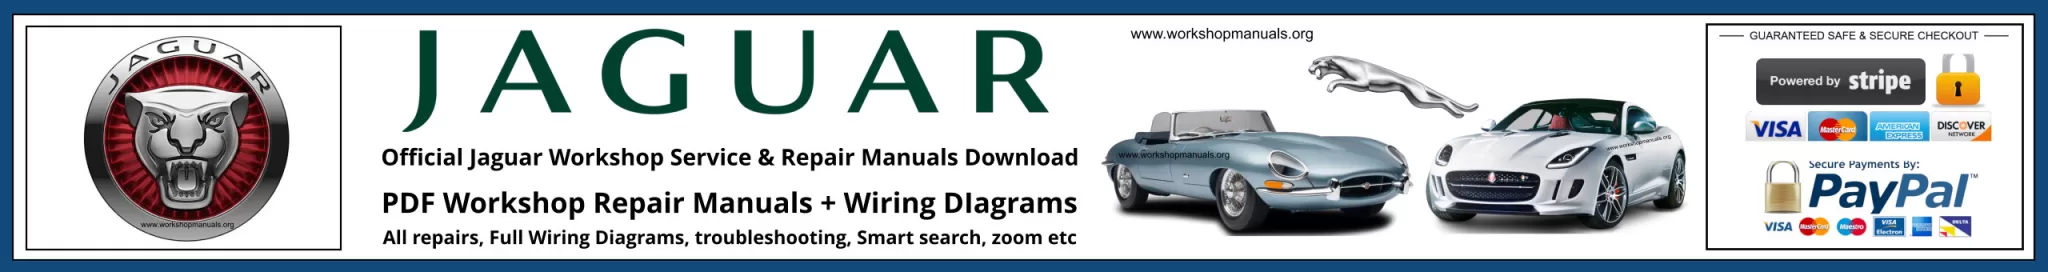 Jaguar Repair Manual Banner